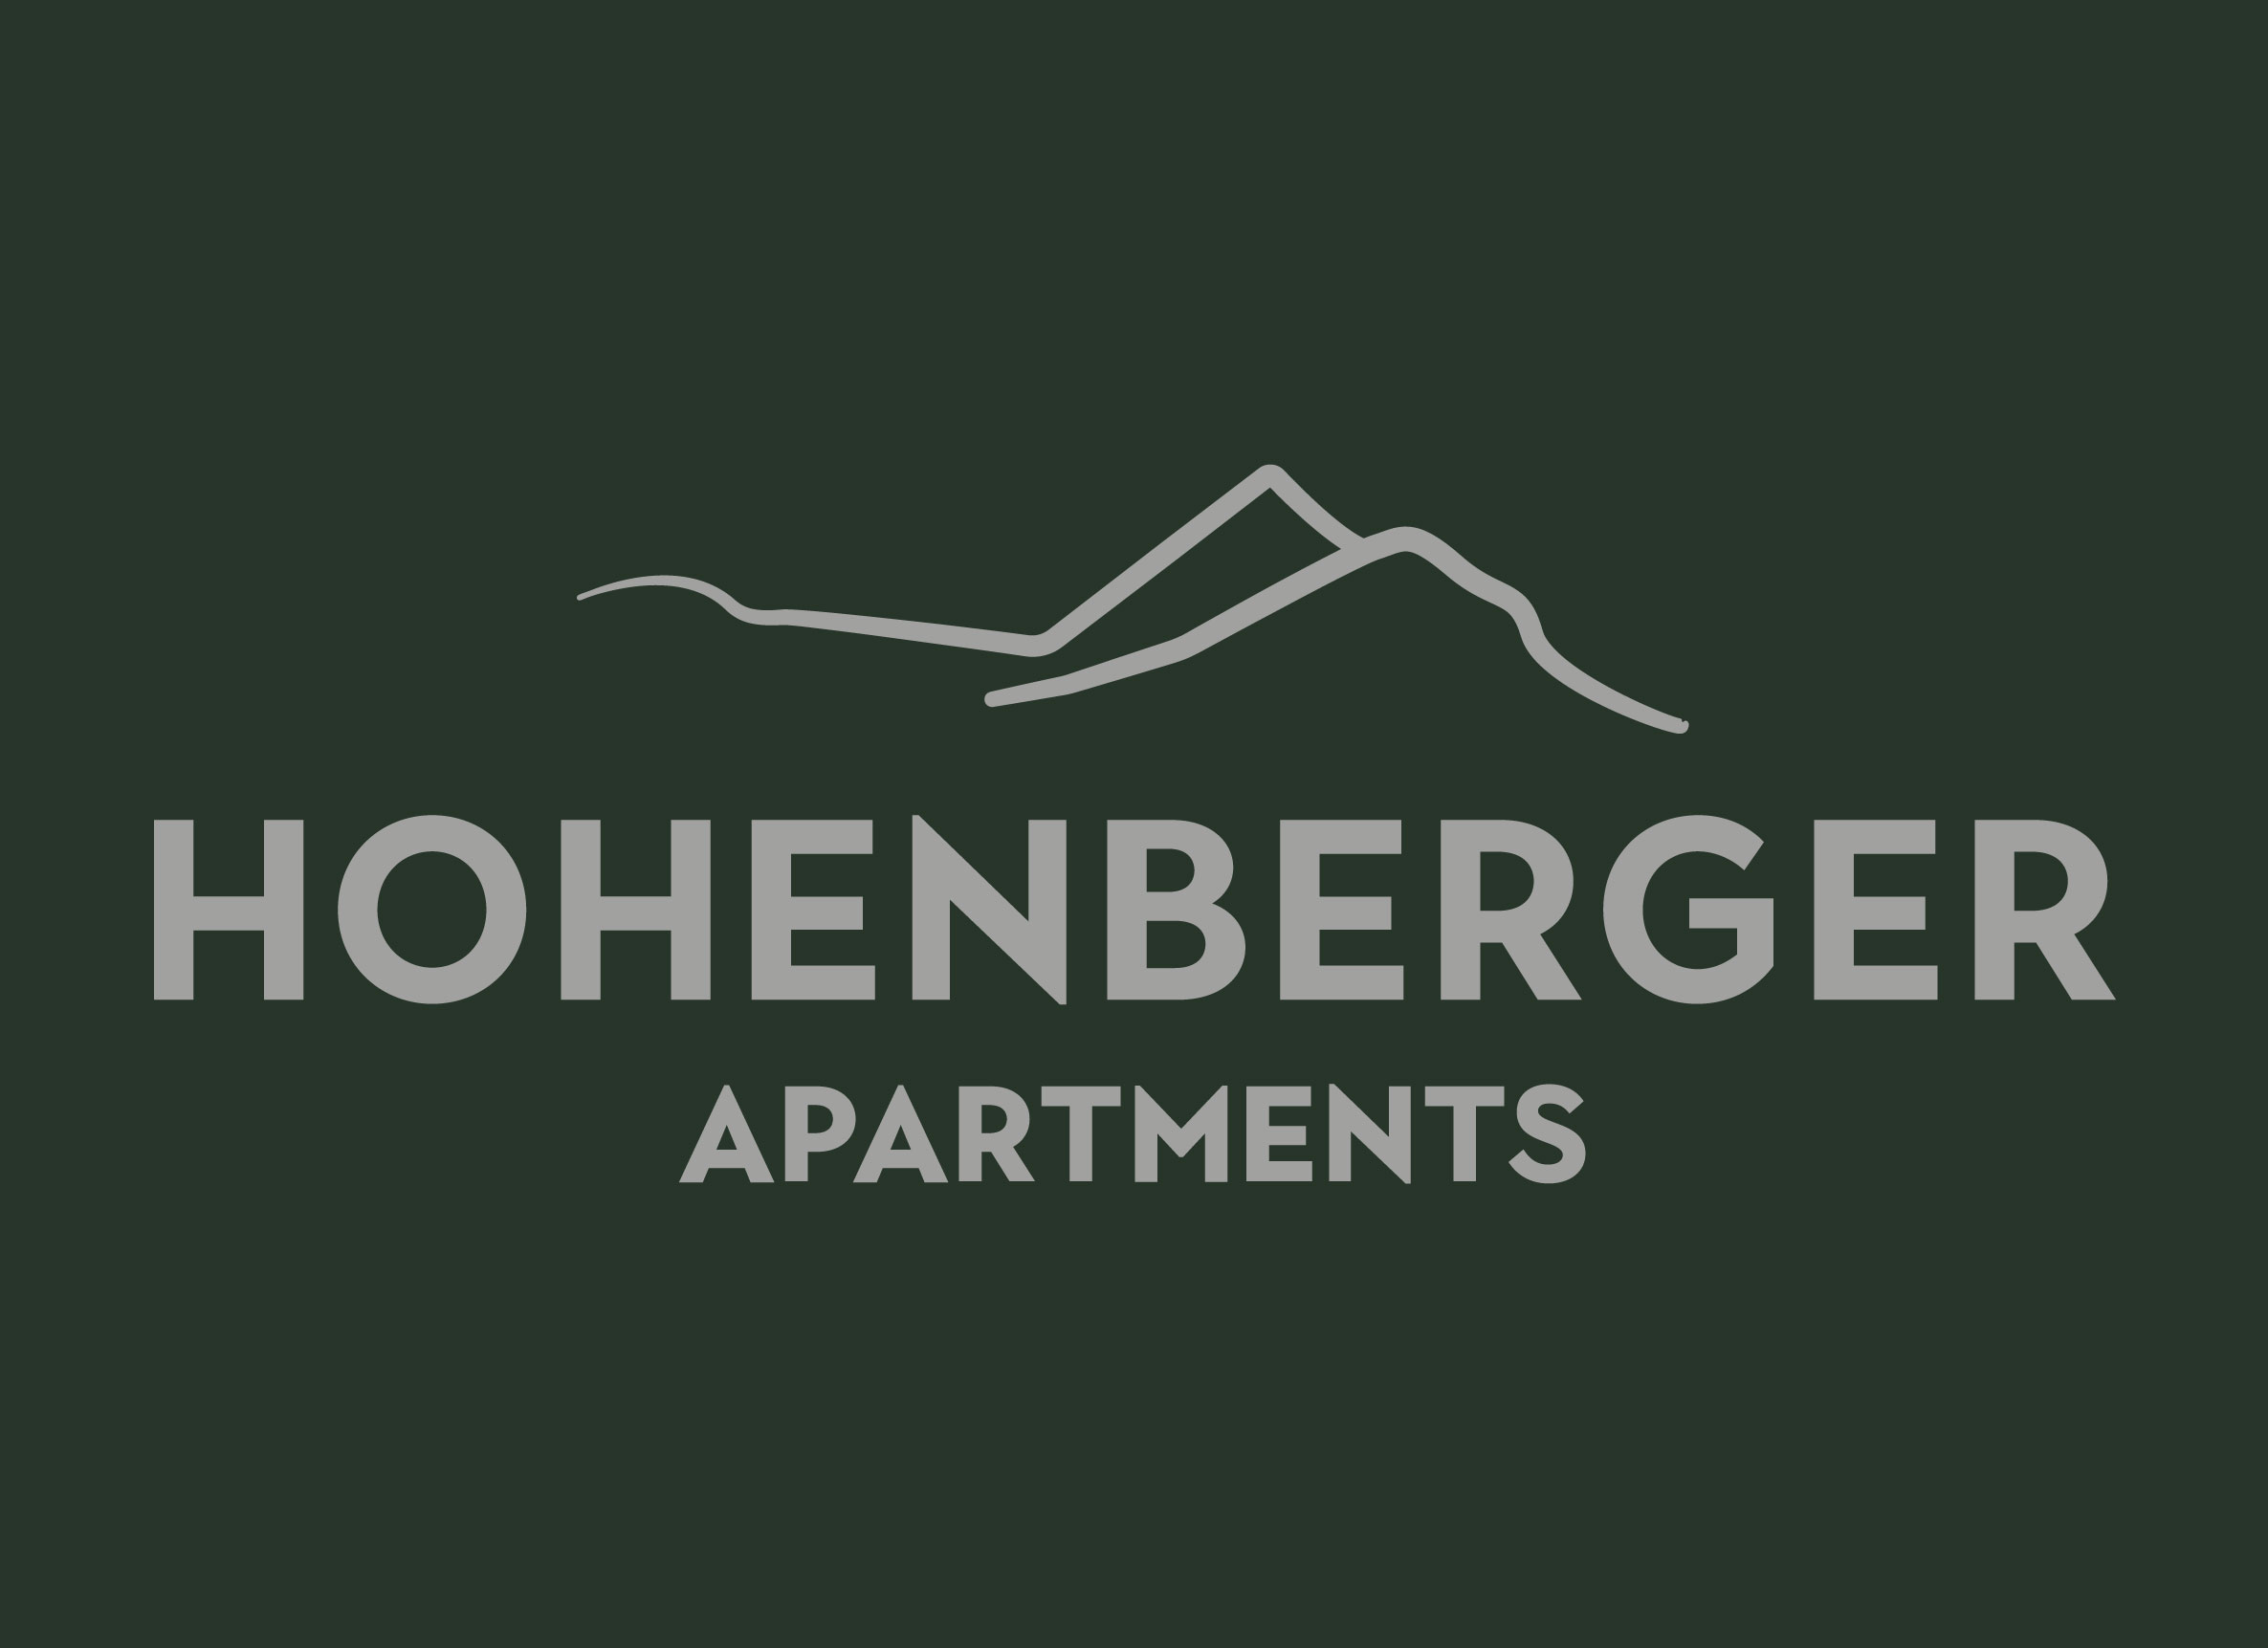 Apartmány Hohenberger majú zaujímavú ponuku pre držitelov sezónnej karty Gopass Šikovná sezónka